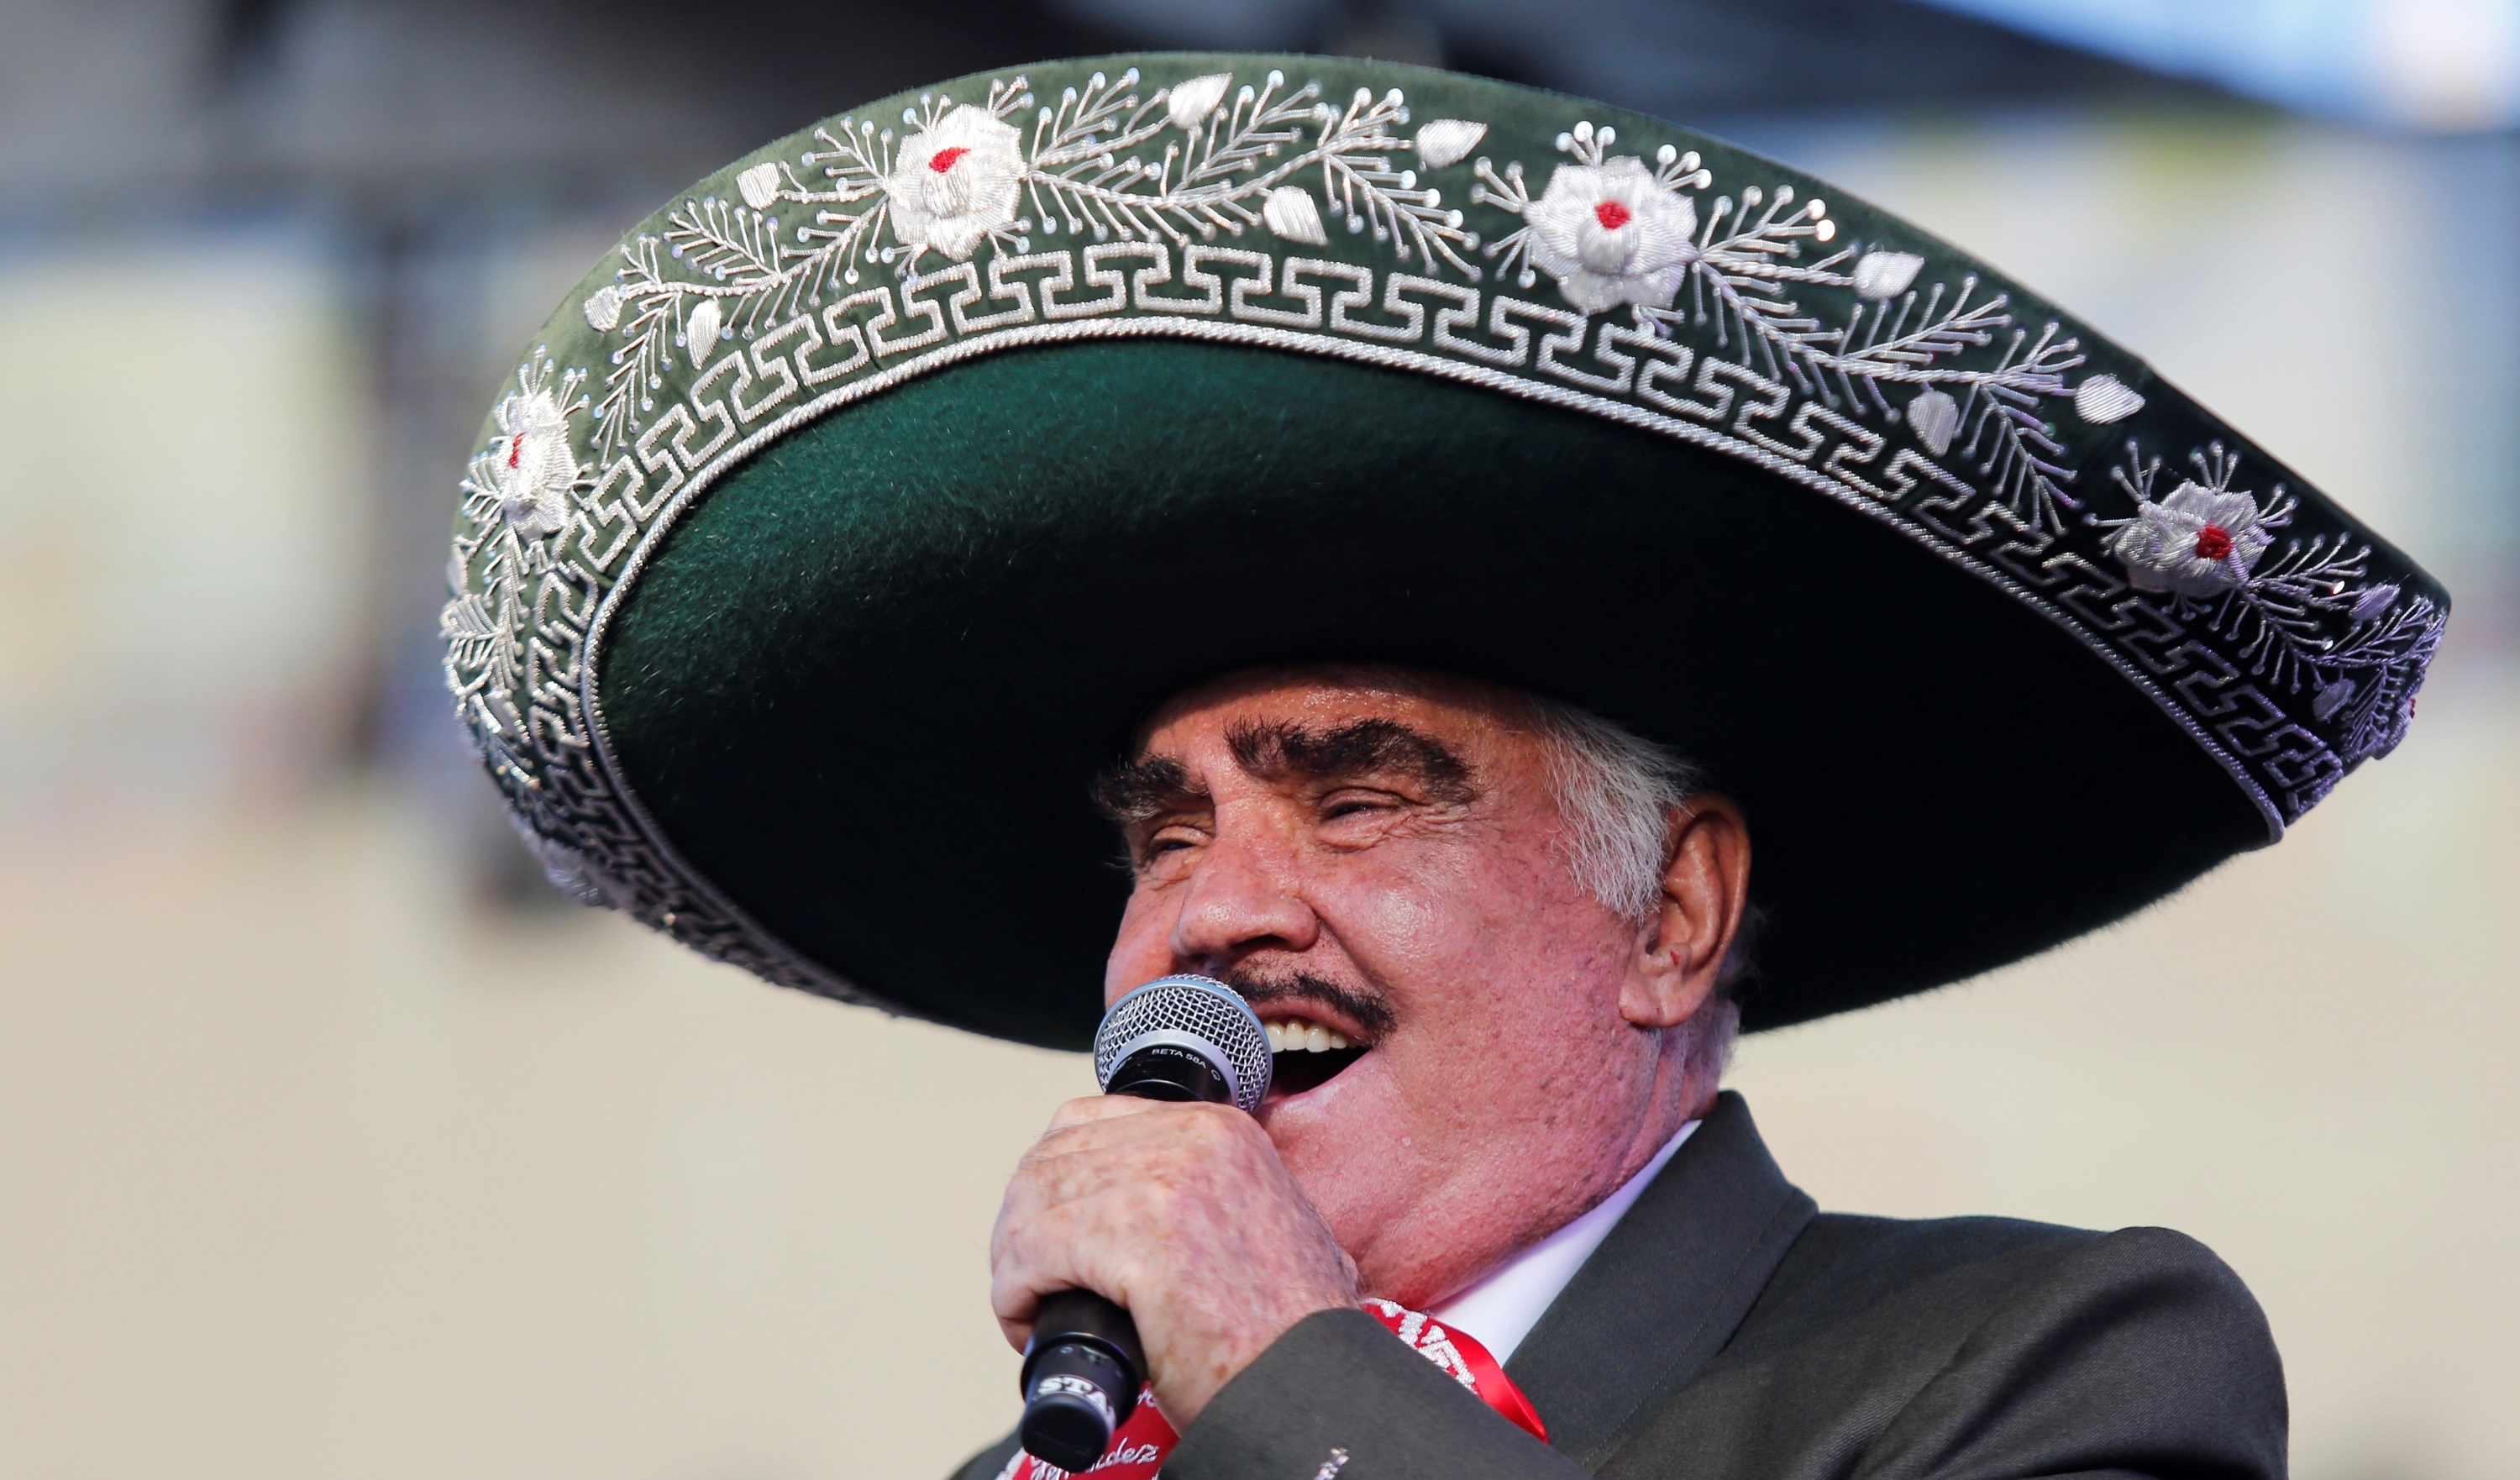 Vicente Fernández durante un concierto en Guadalajara, Jalisco, México. (Foto Prensa Libre: EFE)